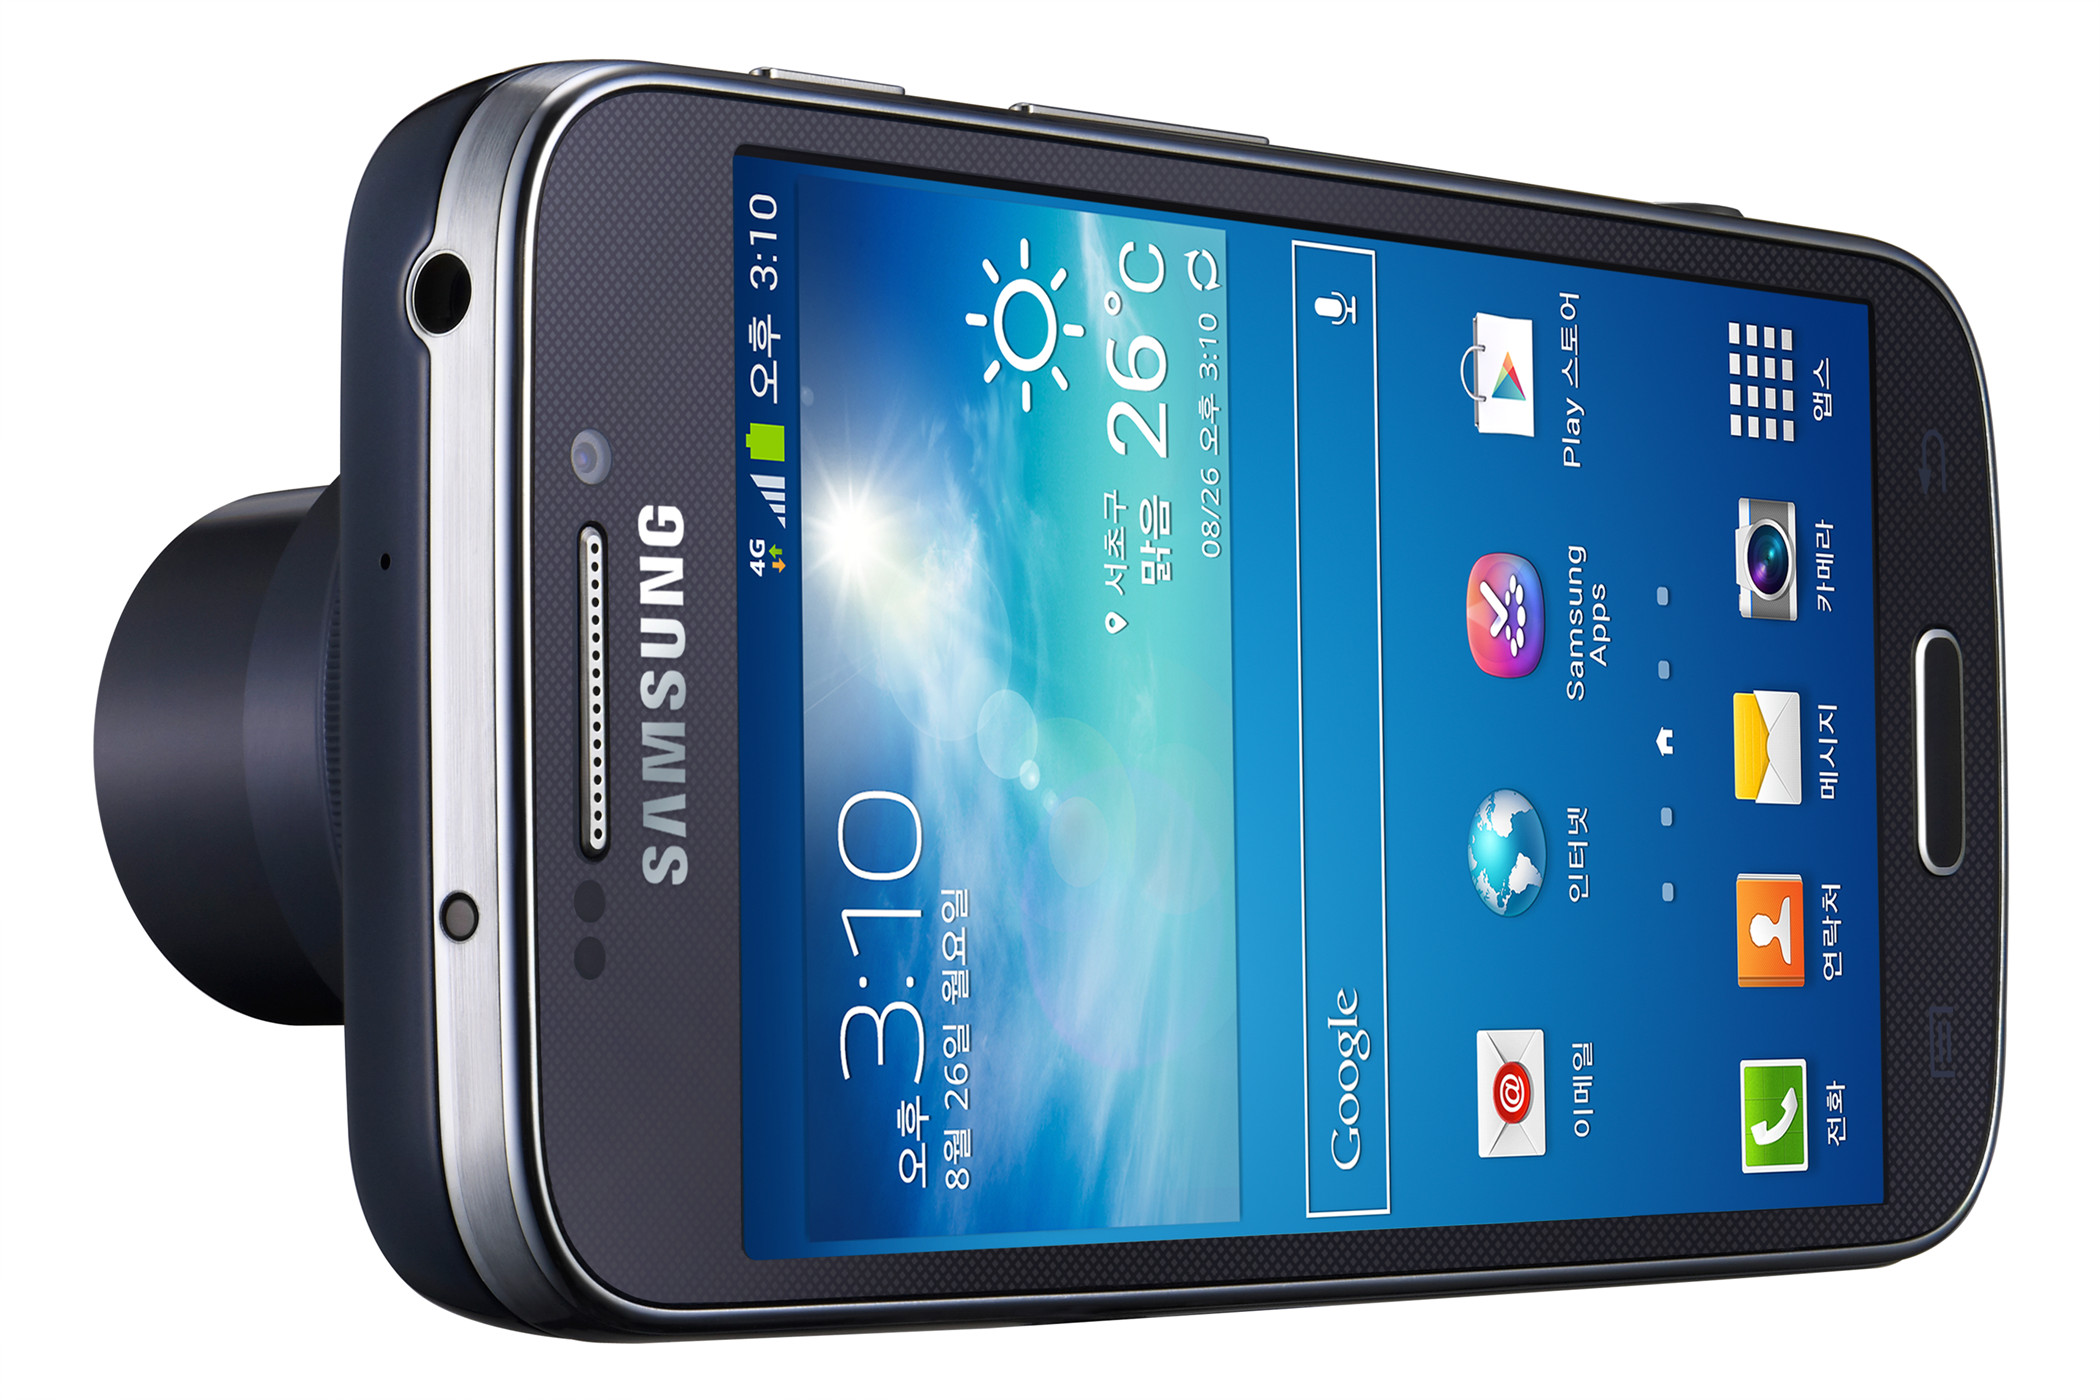 Samsung мобильный купить